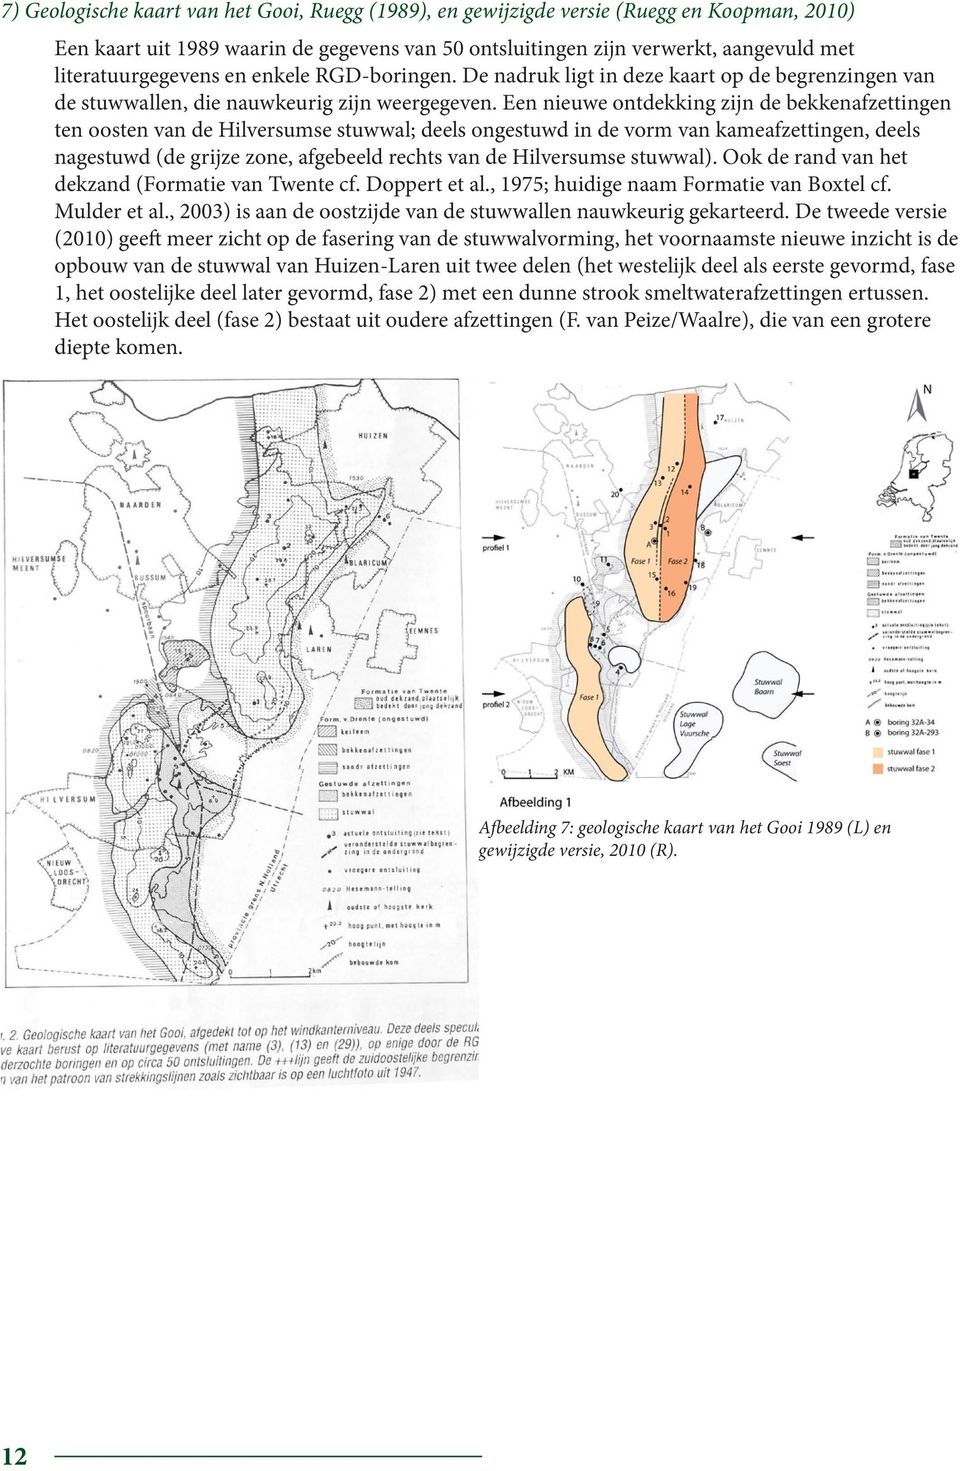 Een nieuwe ontdekking zijn de bekkenafzettingen ten oosten van de Hilversumse stuwwal; deels ongestuwd in de vorm van kameafzettingen, deels nagestuwd (de grijze zone, afgebeeld rechts van de